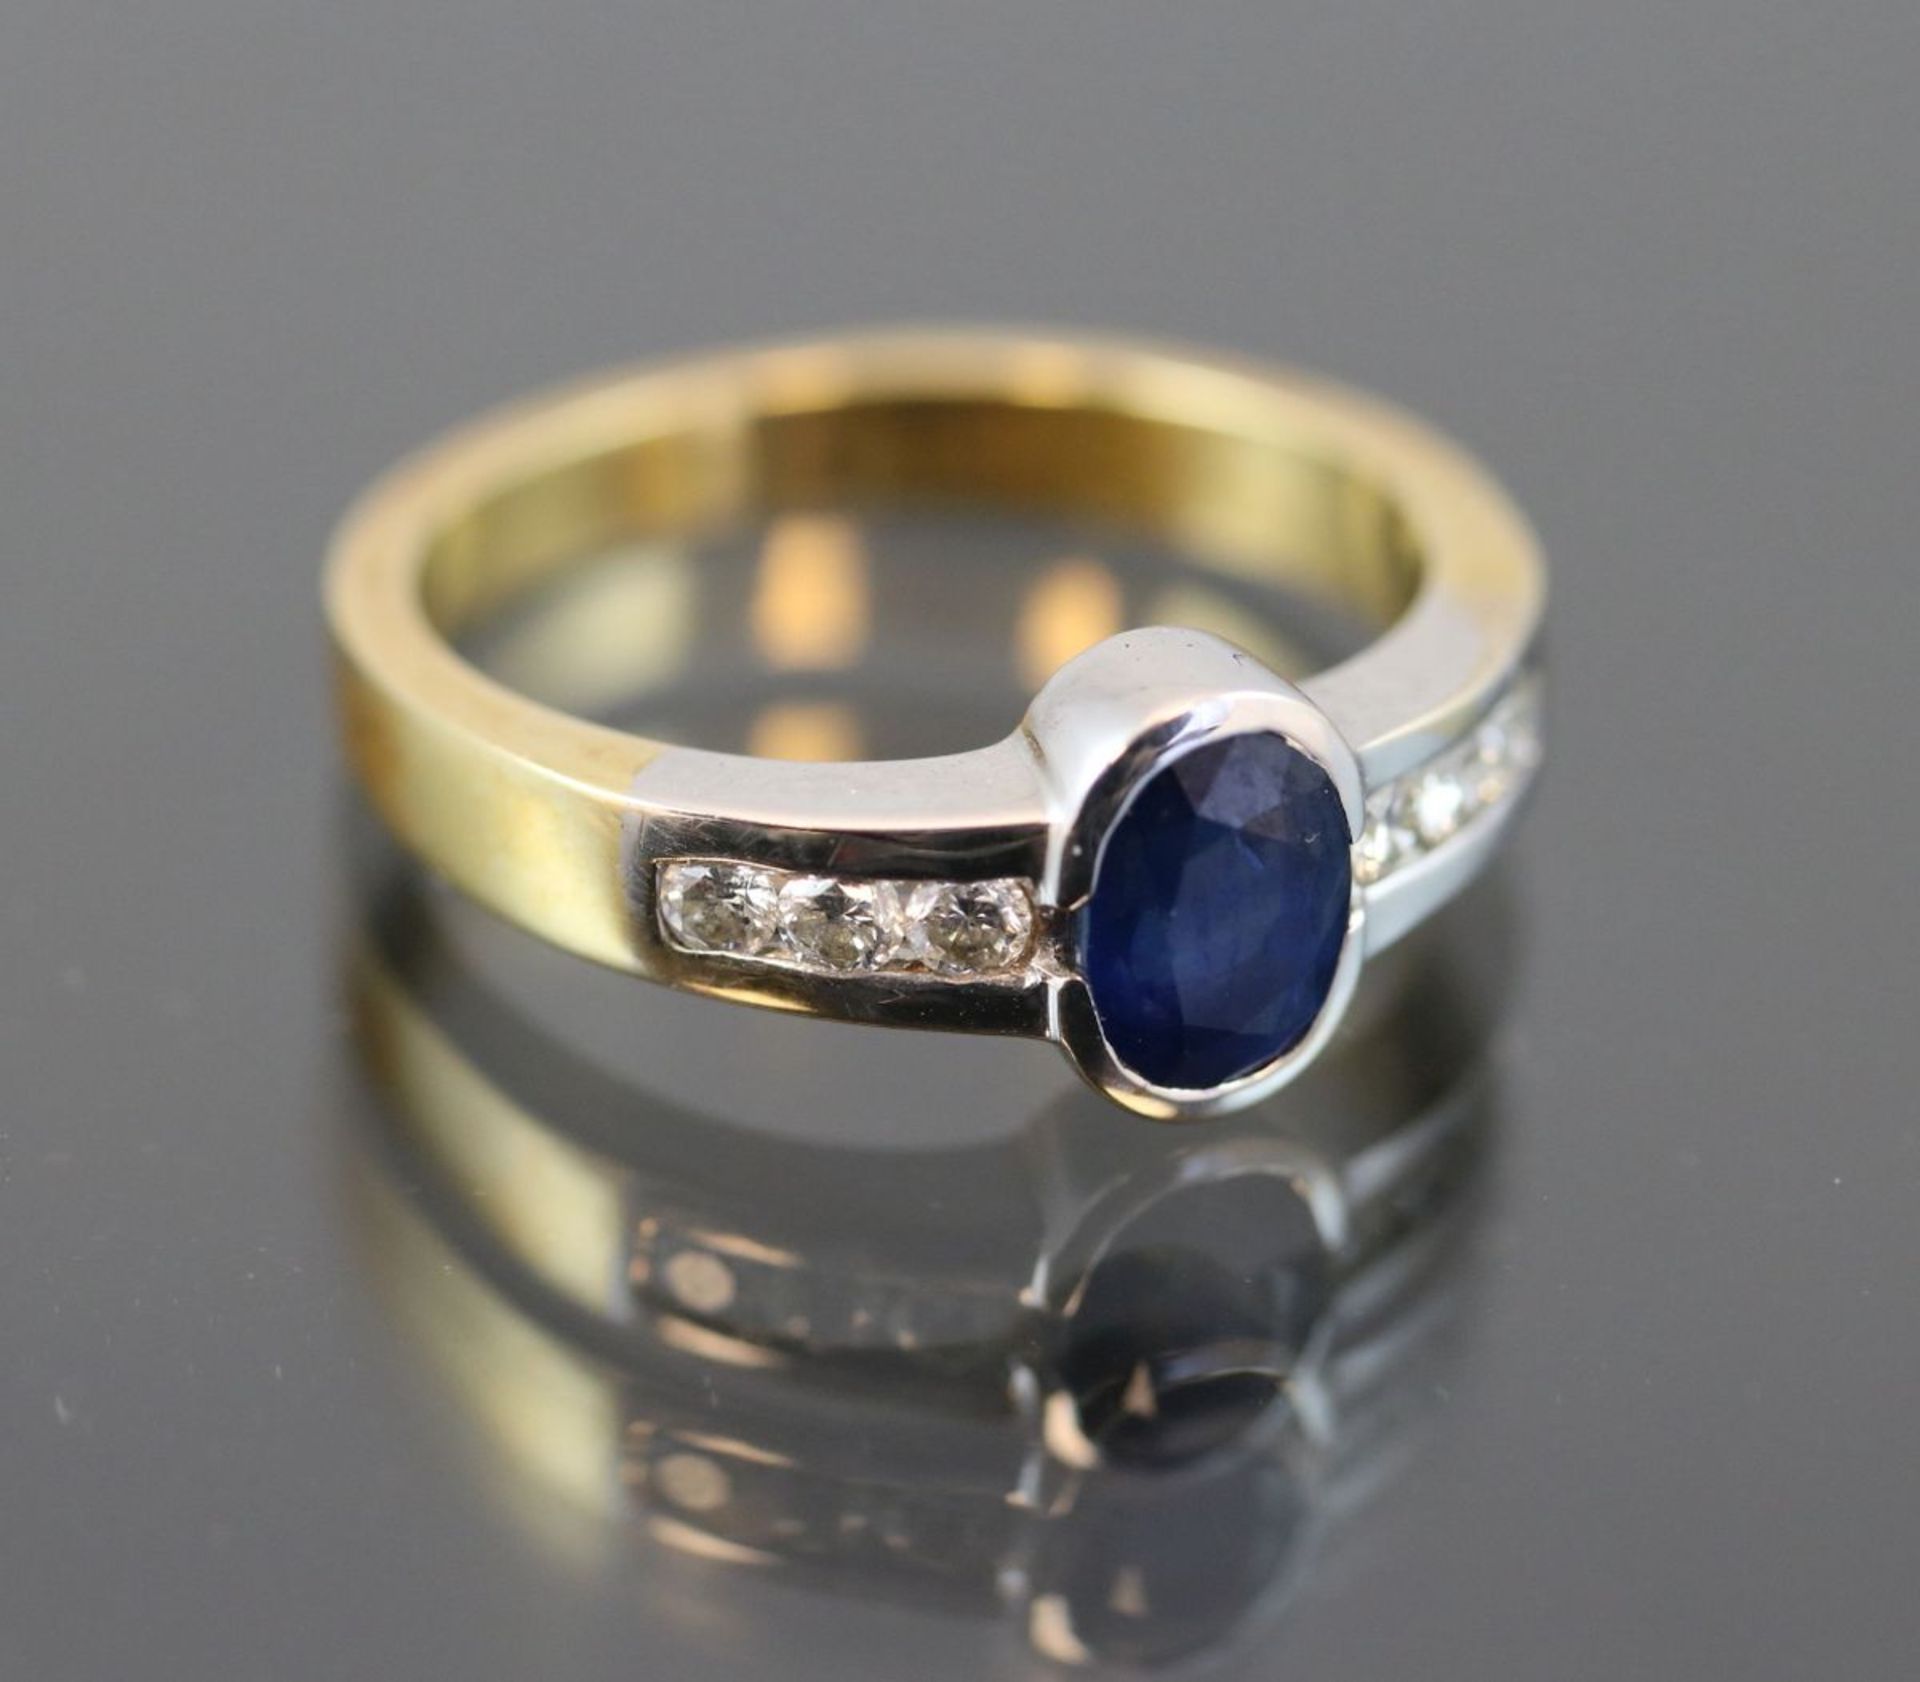 Saphir-Brillant-Ring, 750 Gold5,9 Gramm 6 Brillanten, 0,50 ct., tw/vsi. Ringgröße: 57Schätzpreis: